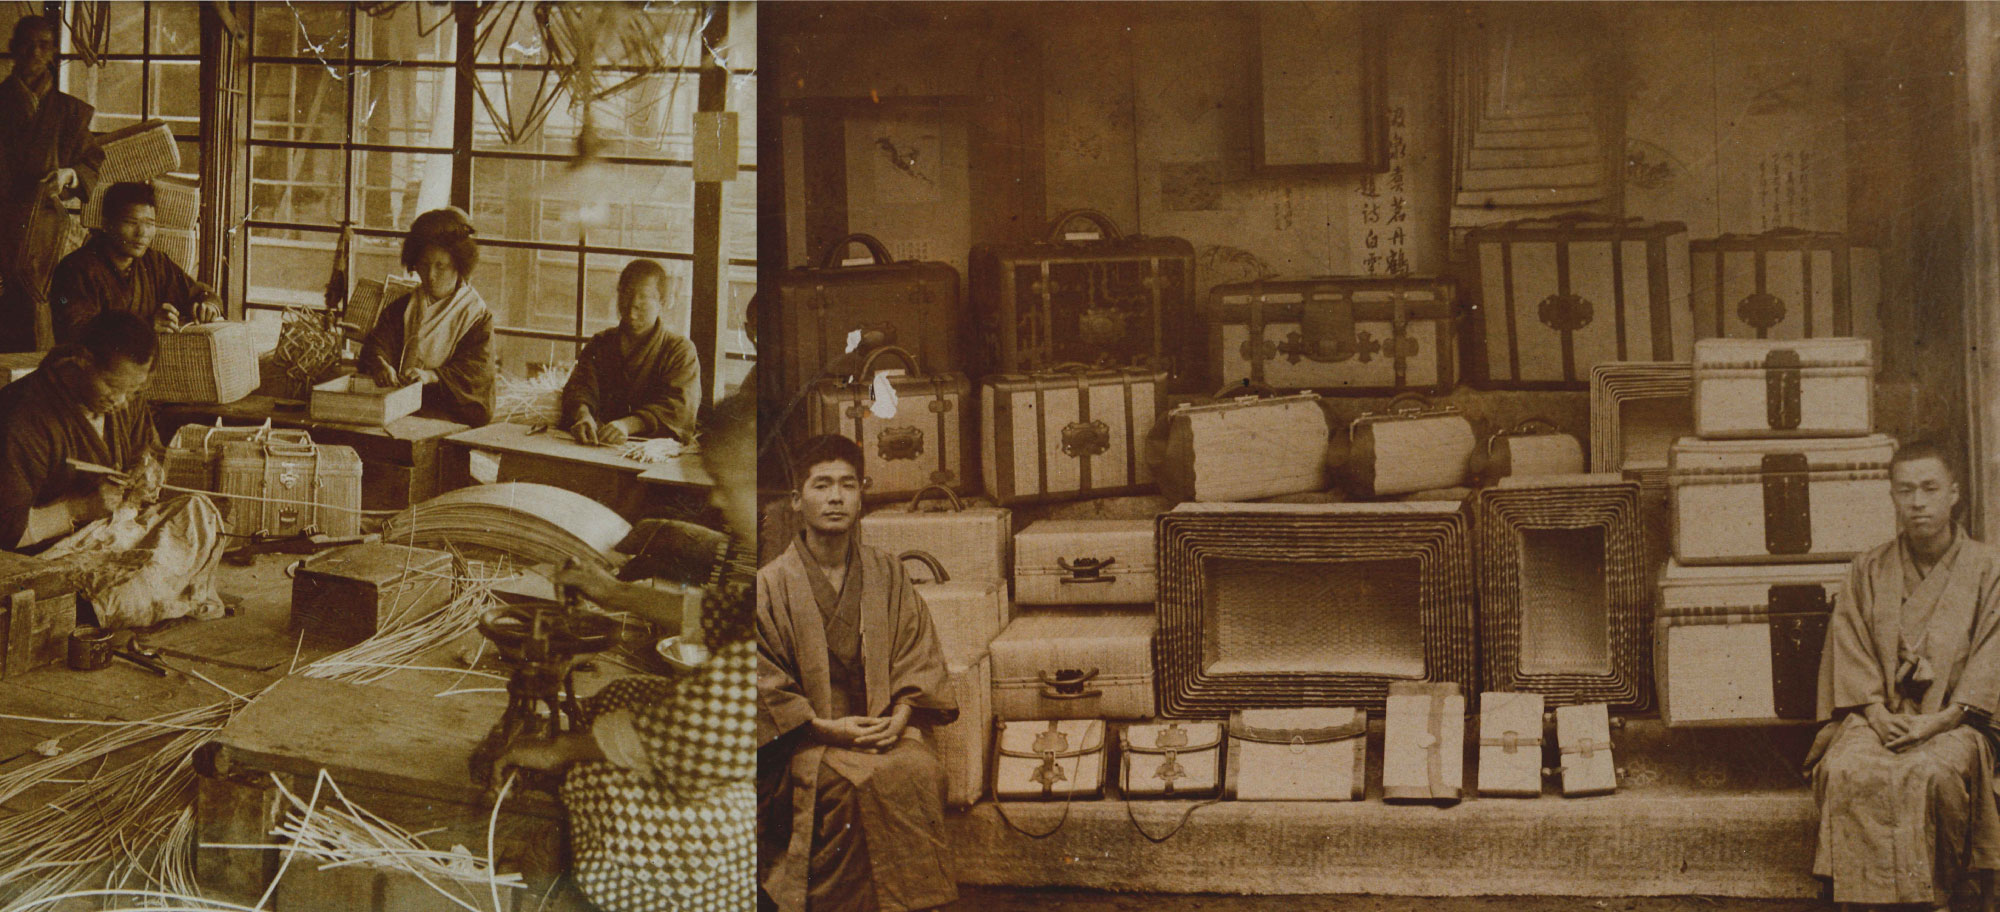 豊岡鞄・古来から鞄制作が行われてきた歴史ある写真